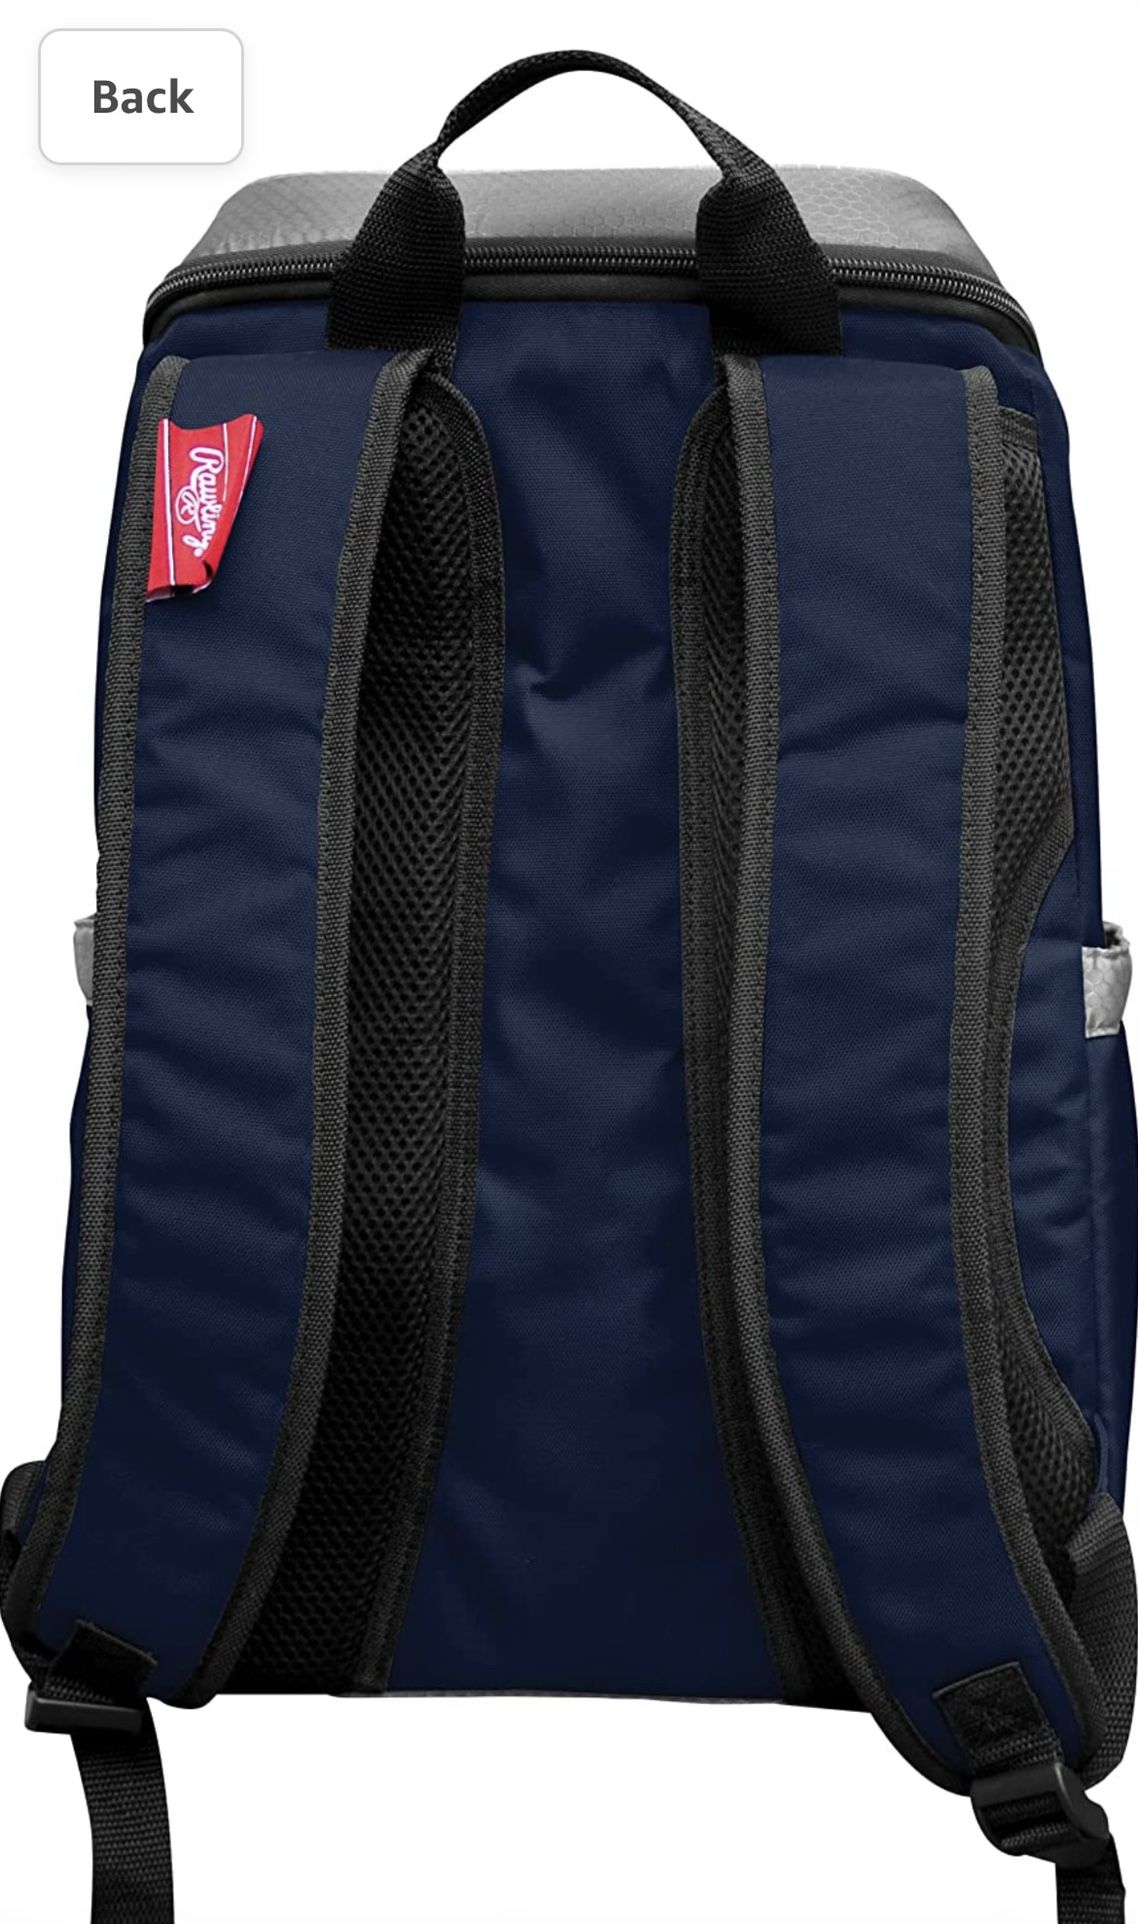 Patriots Backpack Cooler